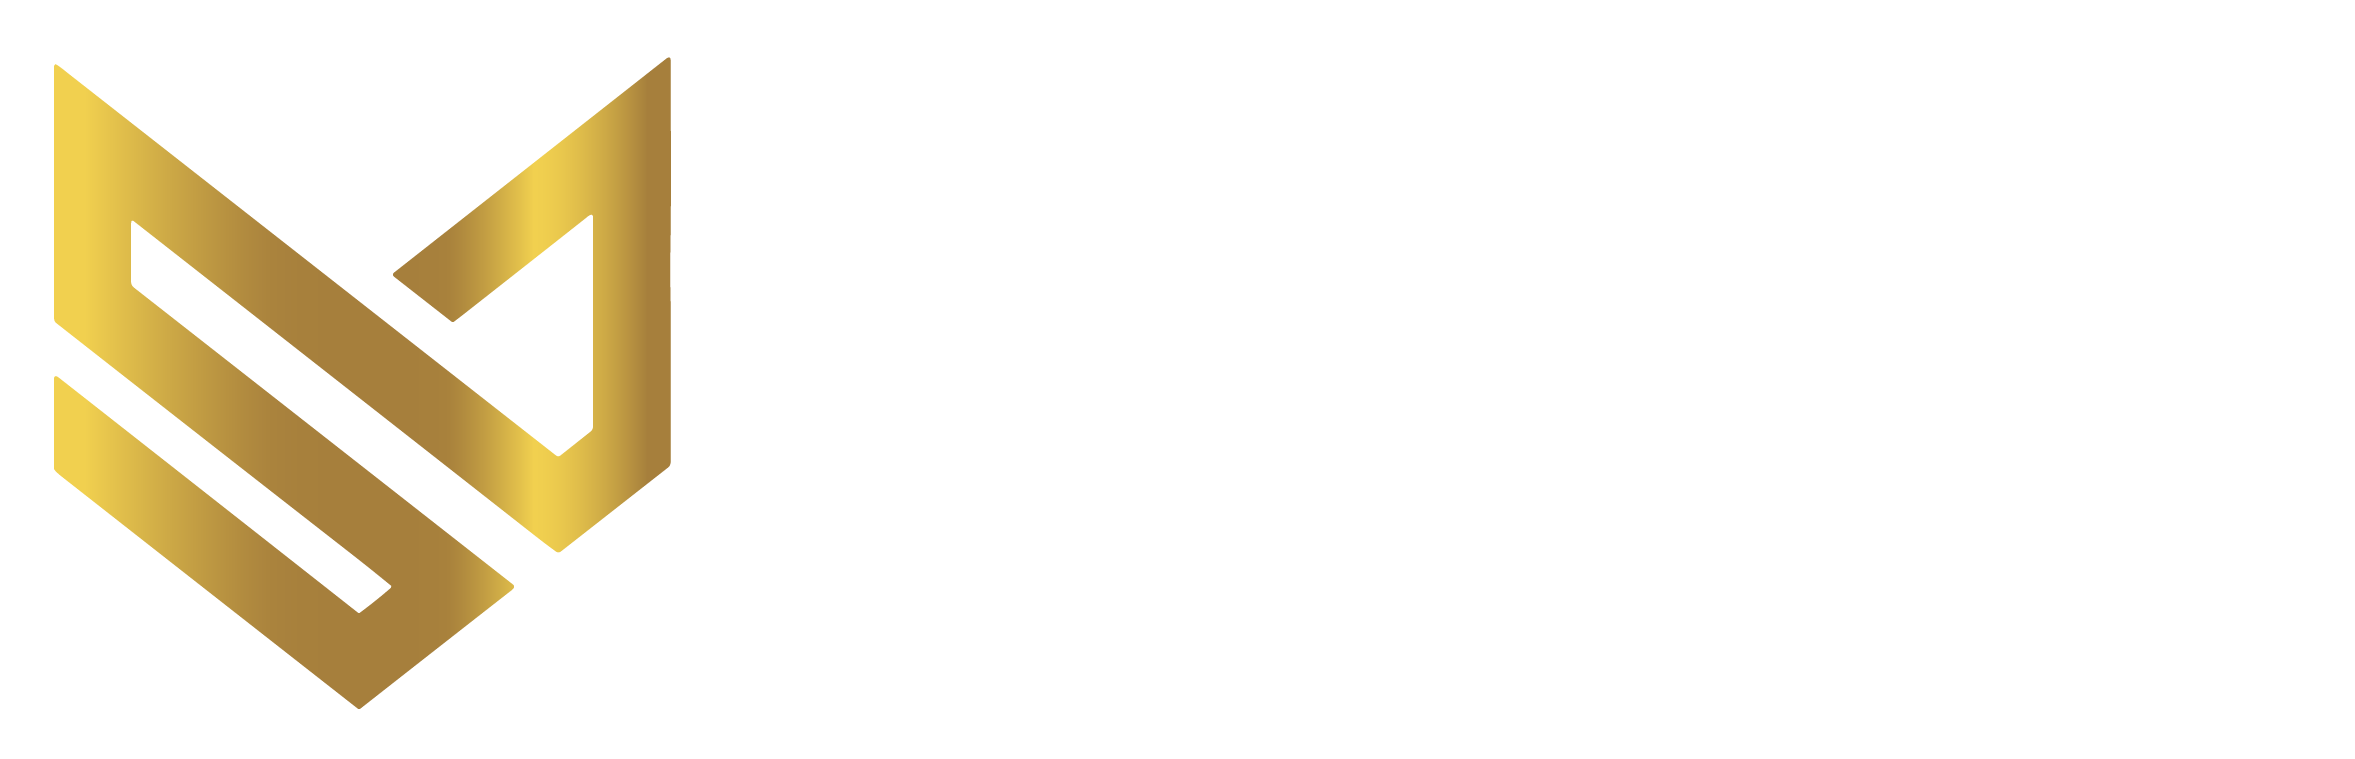 Simba 7 Media